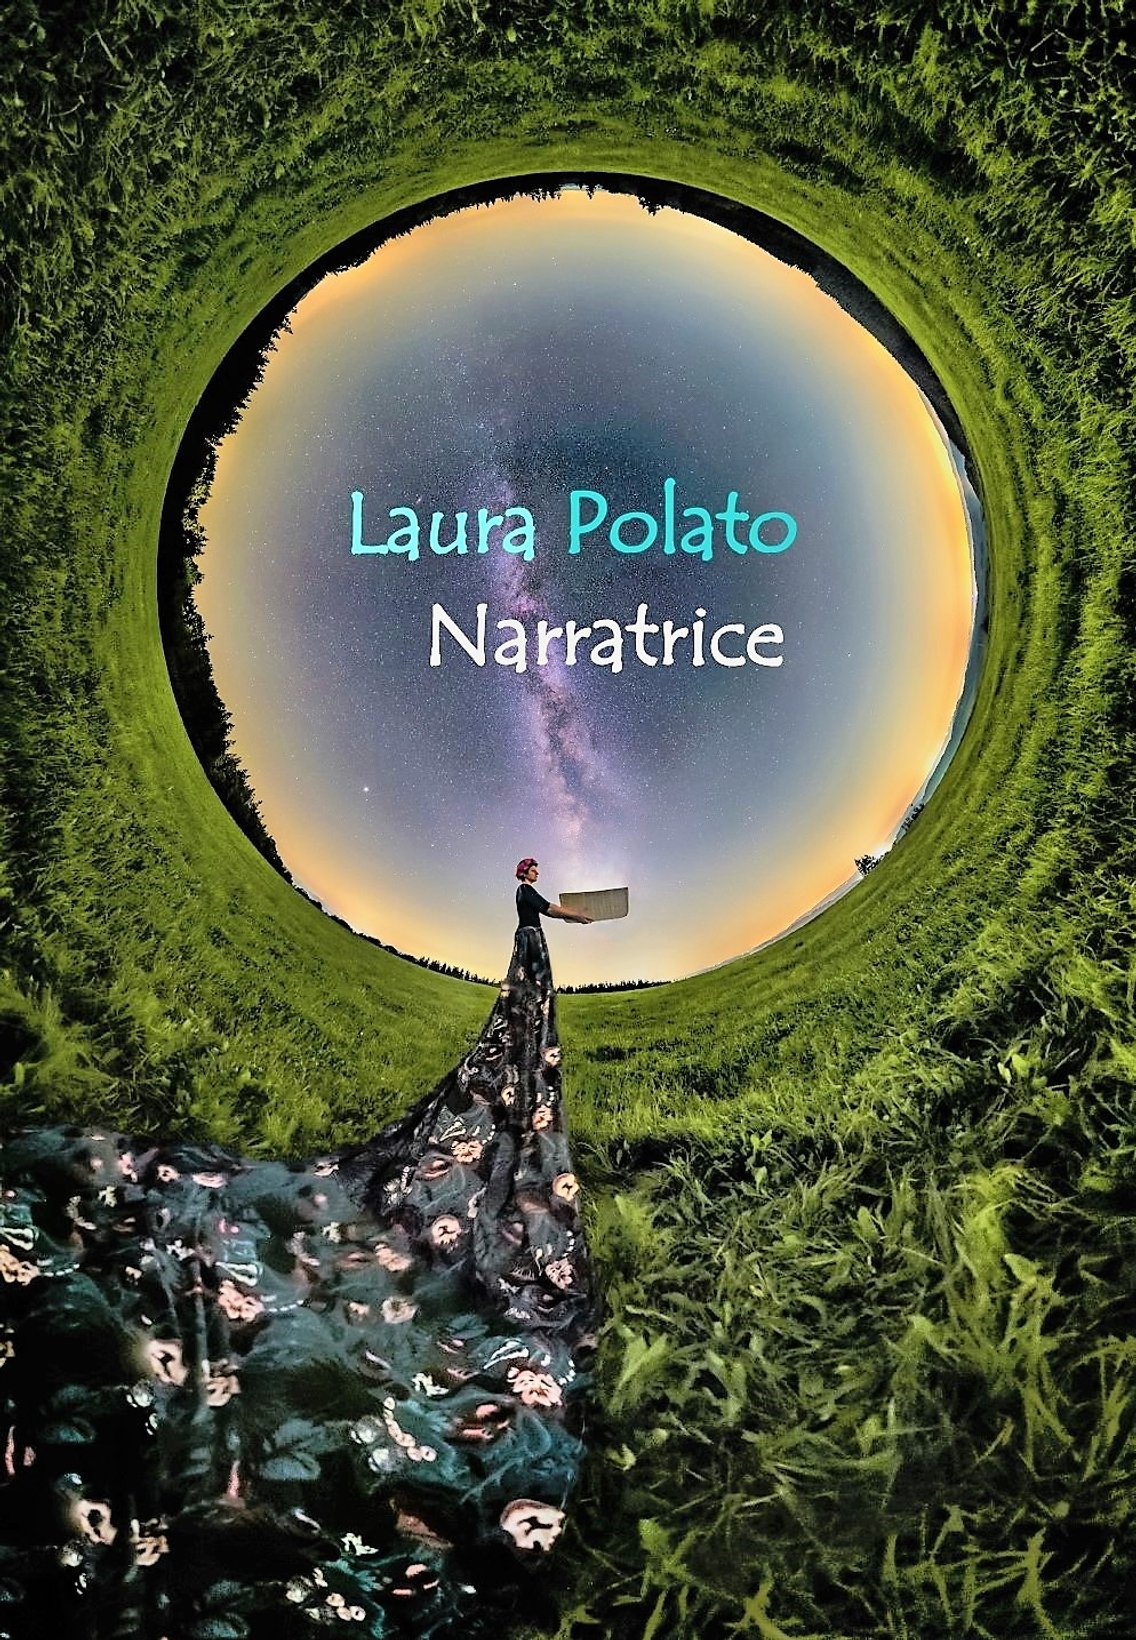 Laura Polato narratrice - Cover Image